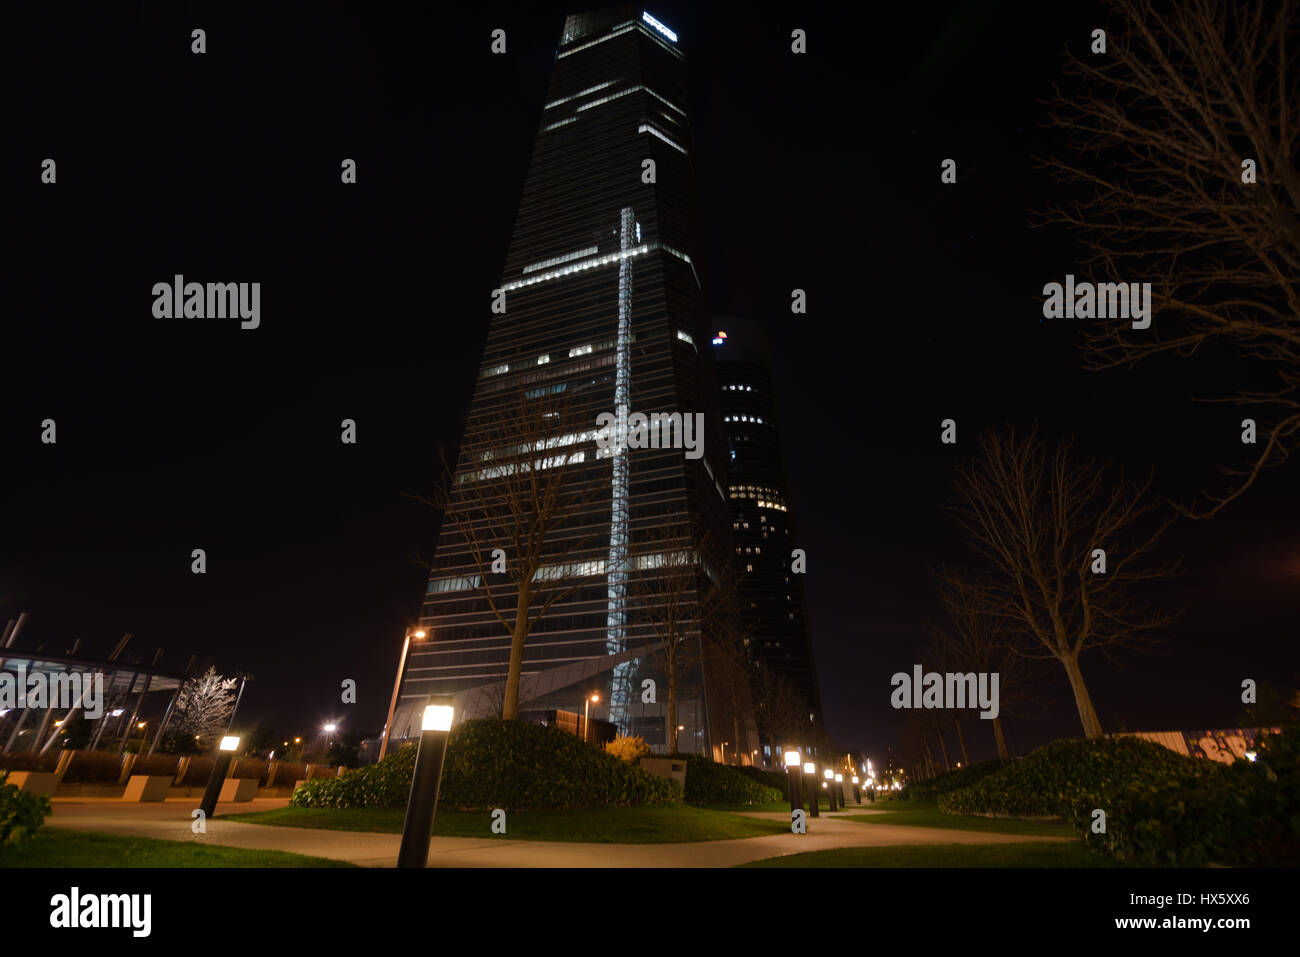 MADRID, Spanien - März 18: Crystal Tower und PwC Tower bei Nacht, Cuatro Torres Business Area am 18. März 2017 in Madrid, Spanien Stockfoto